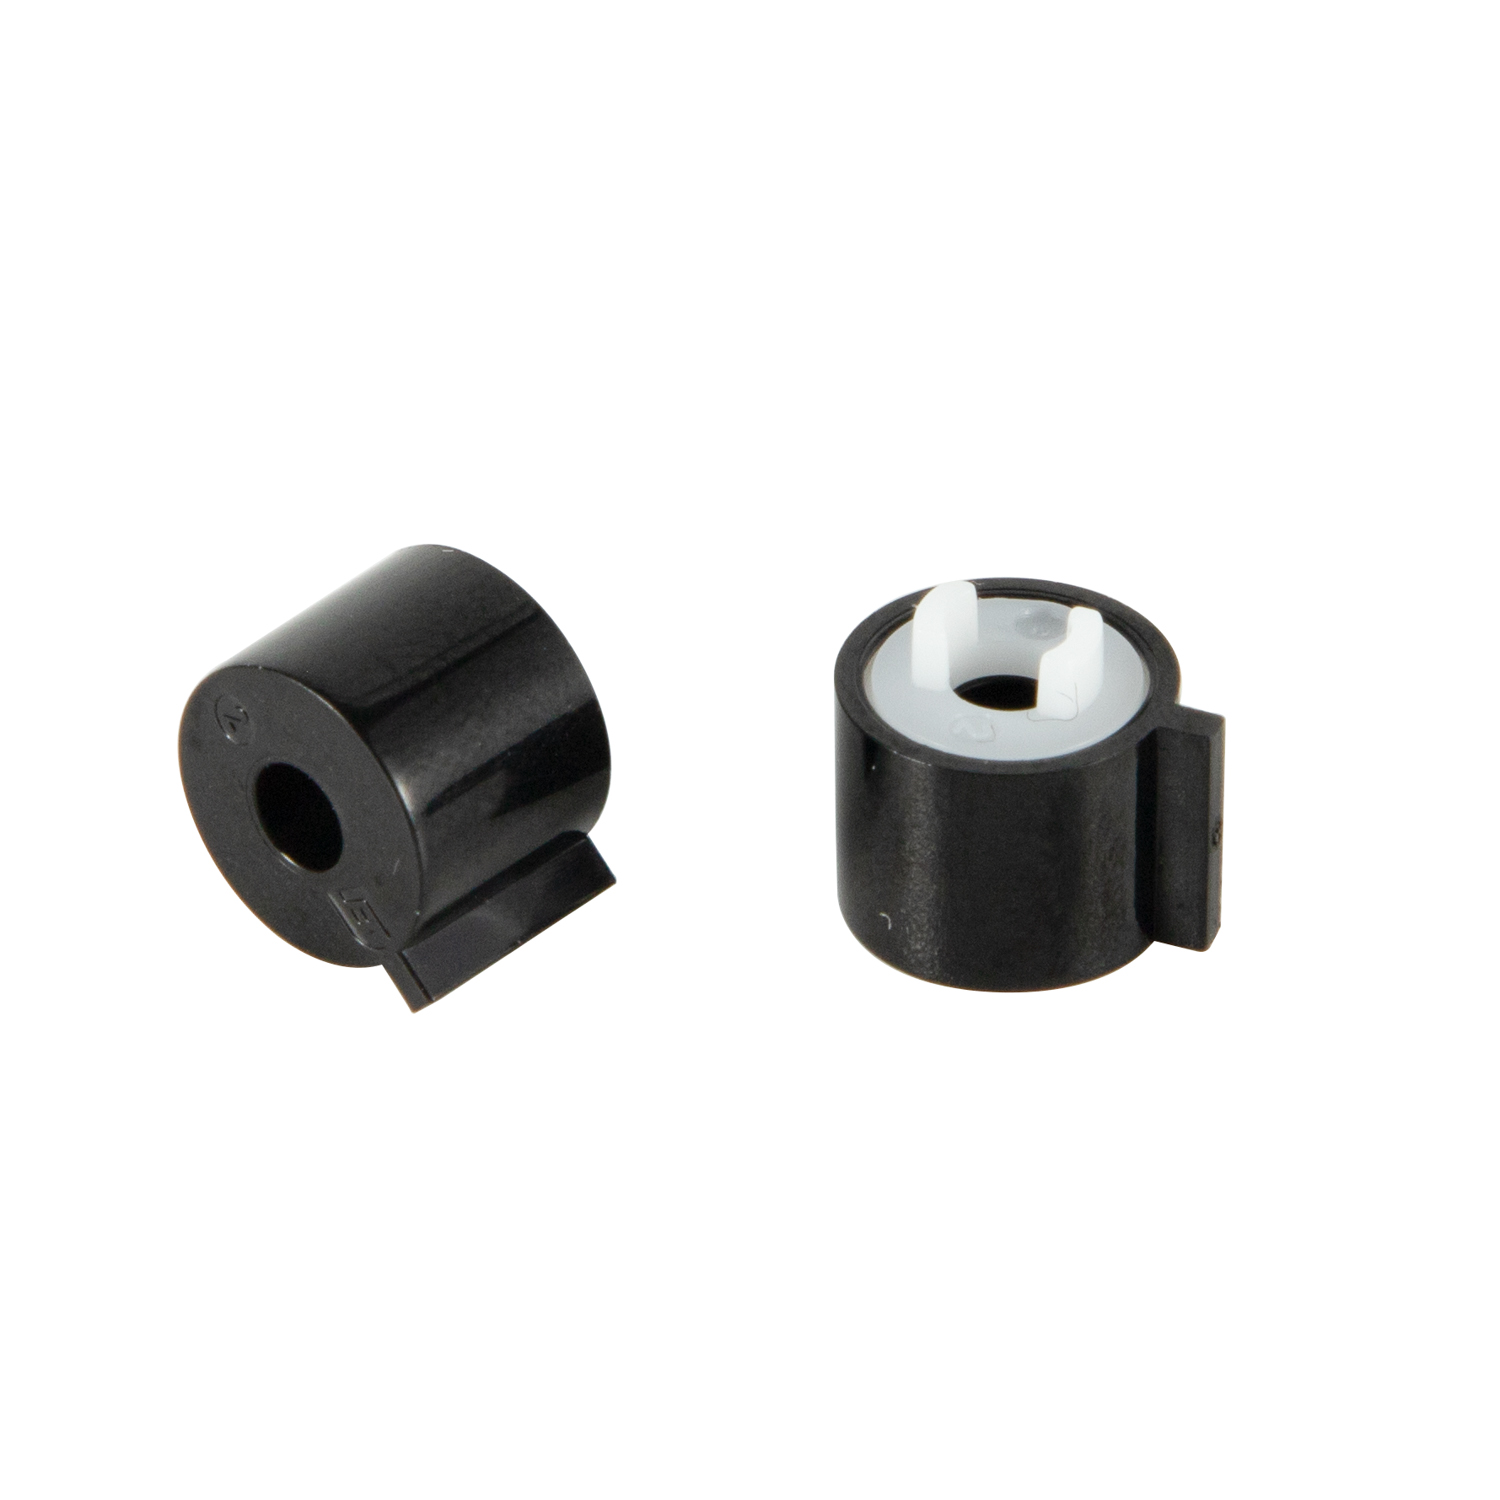 Dobond – mini amortisseur de charnière, petit baril, composants matériels pour véhicule automobile